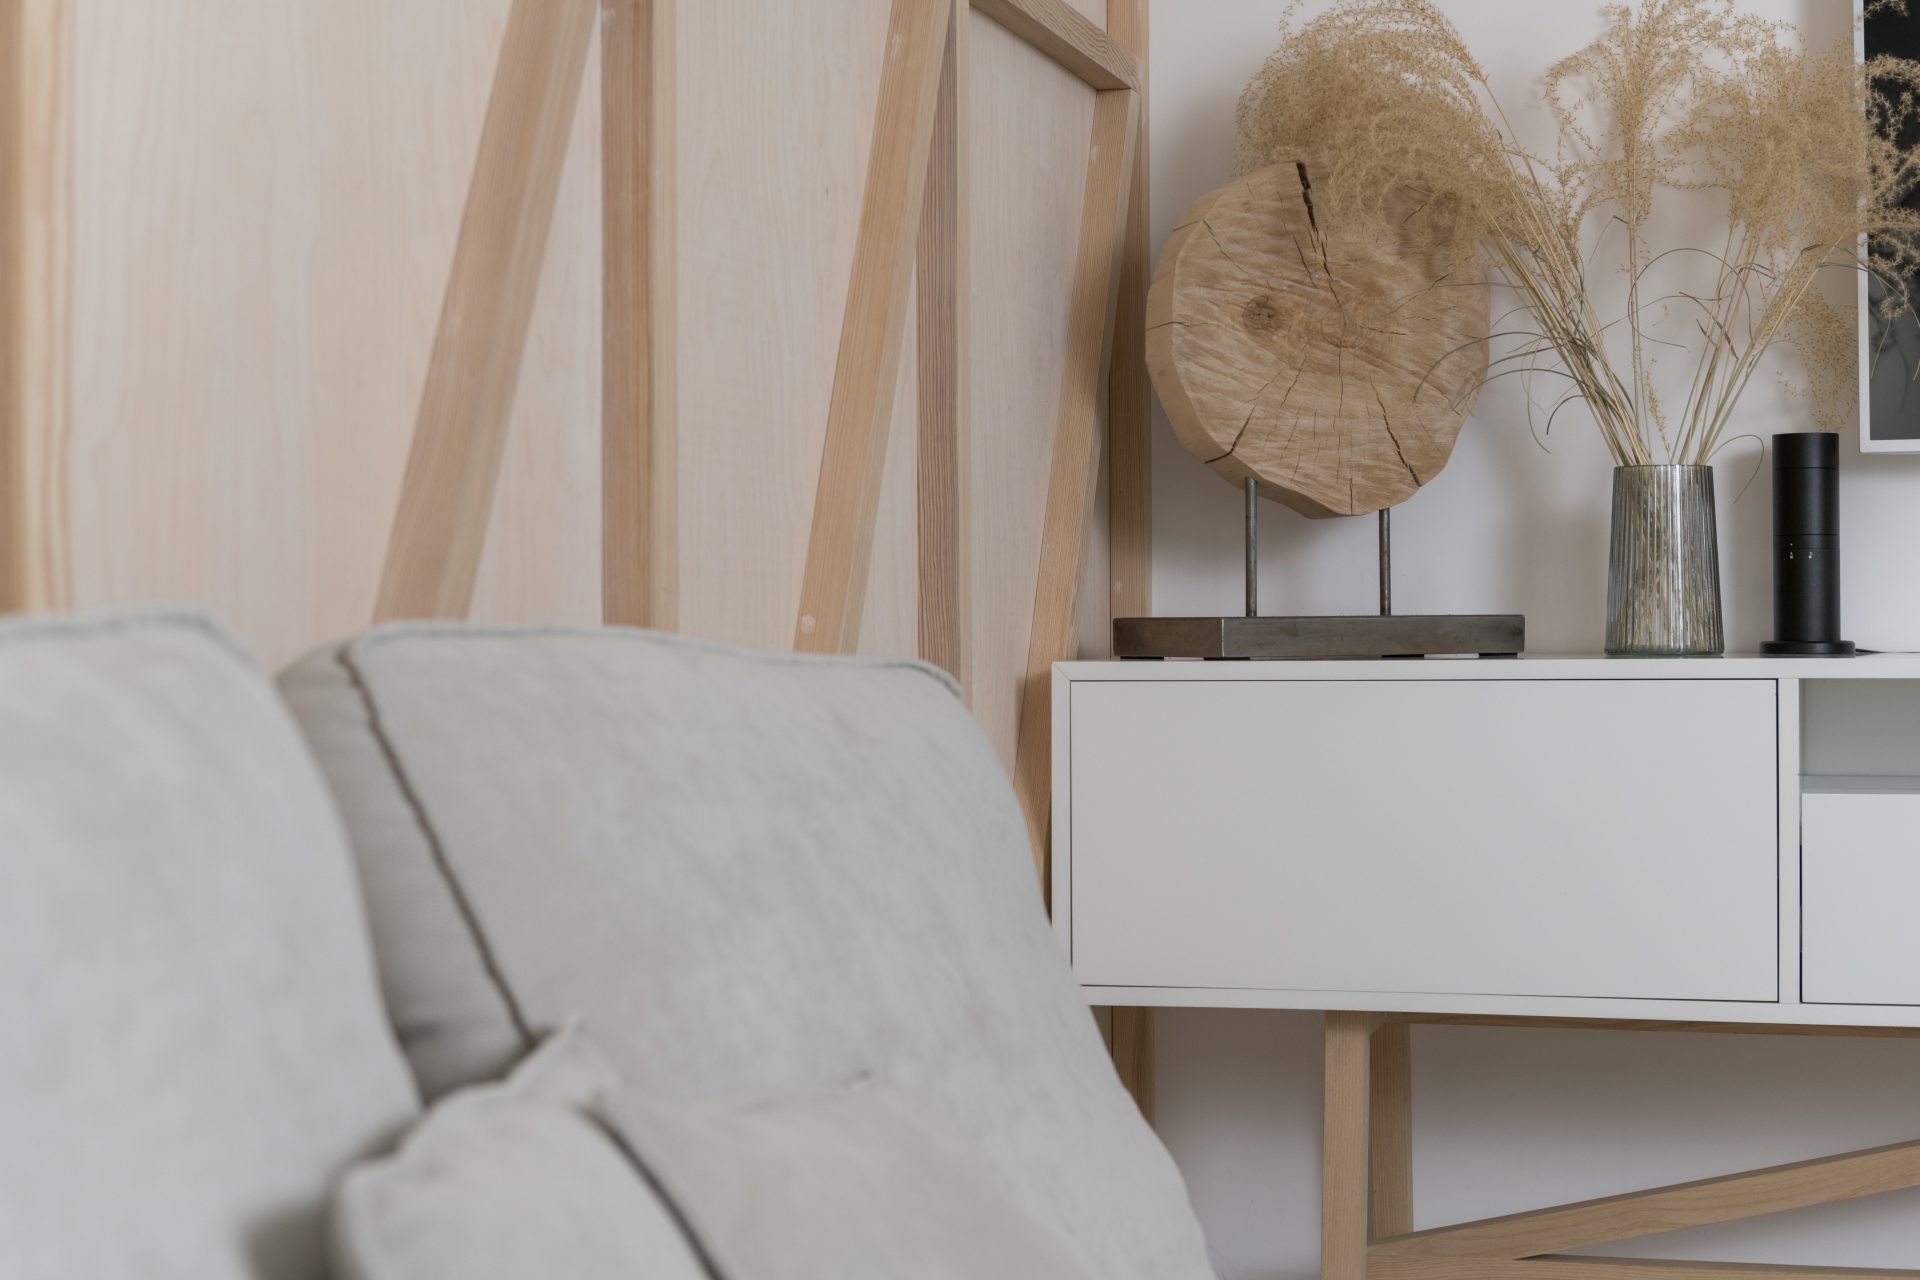 Hoe creëer je een minimalistische woonkamer die toch warmte uitstraalt?